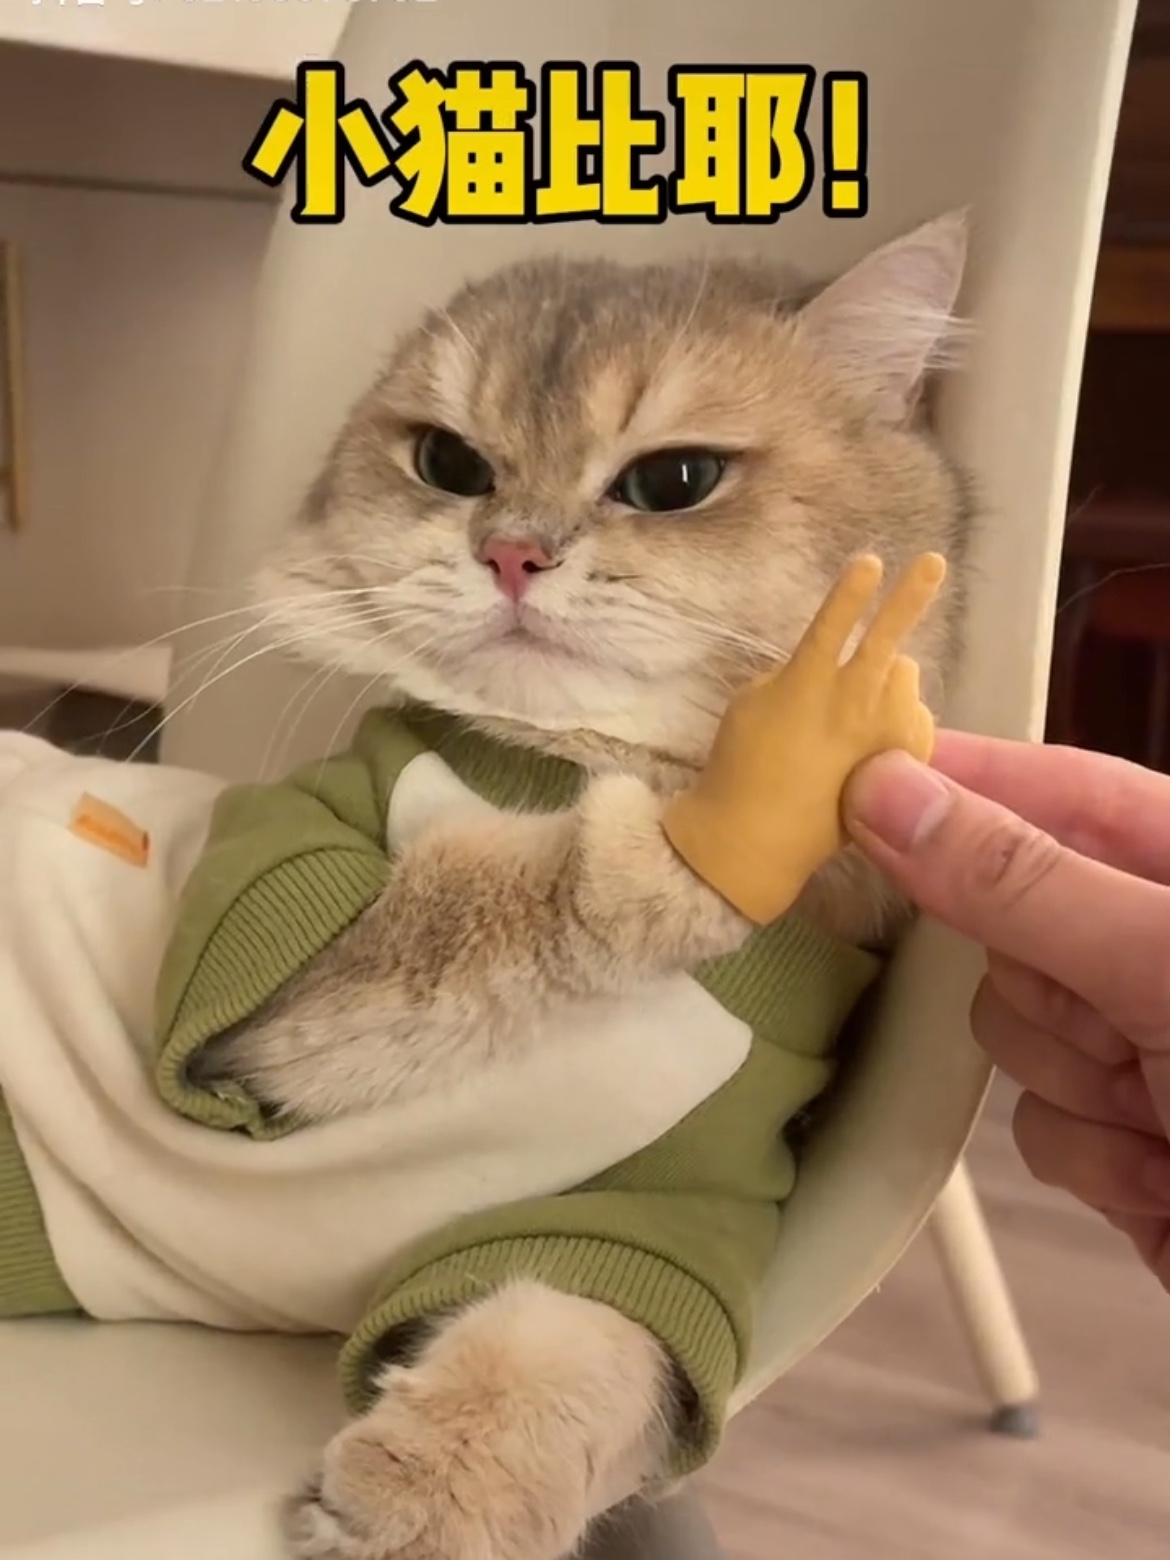 薄荷同款猫咪人手玩具搞笑手指装